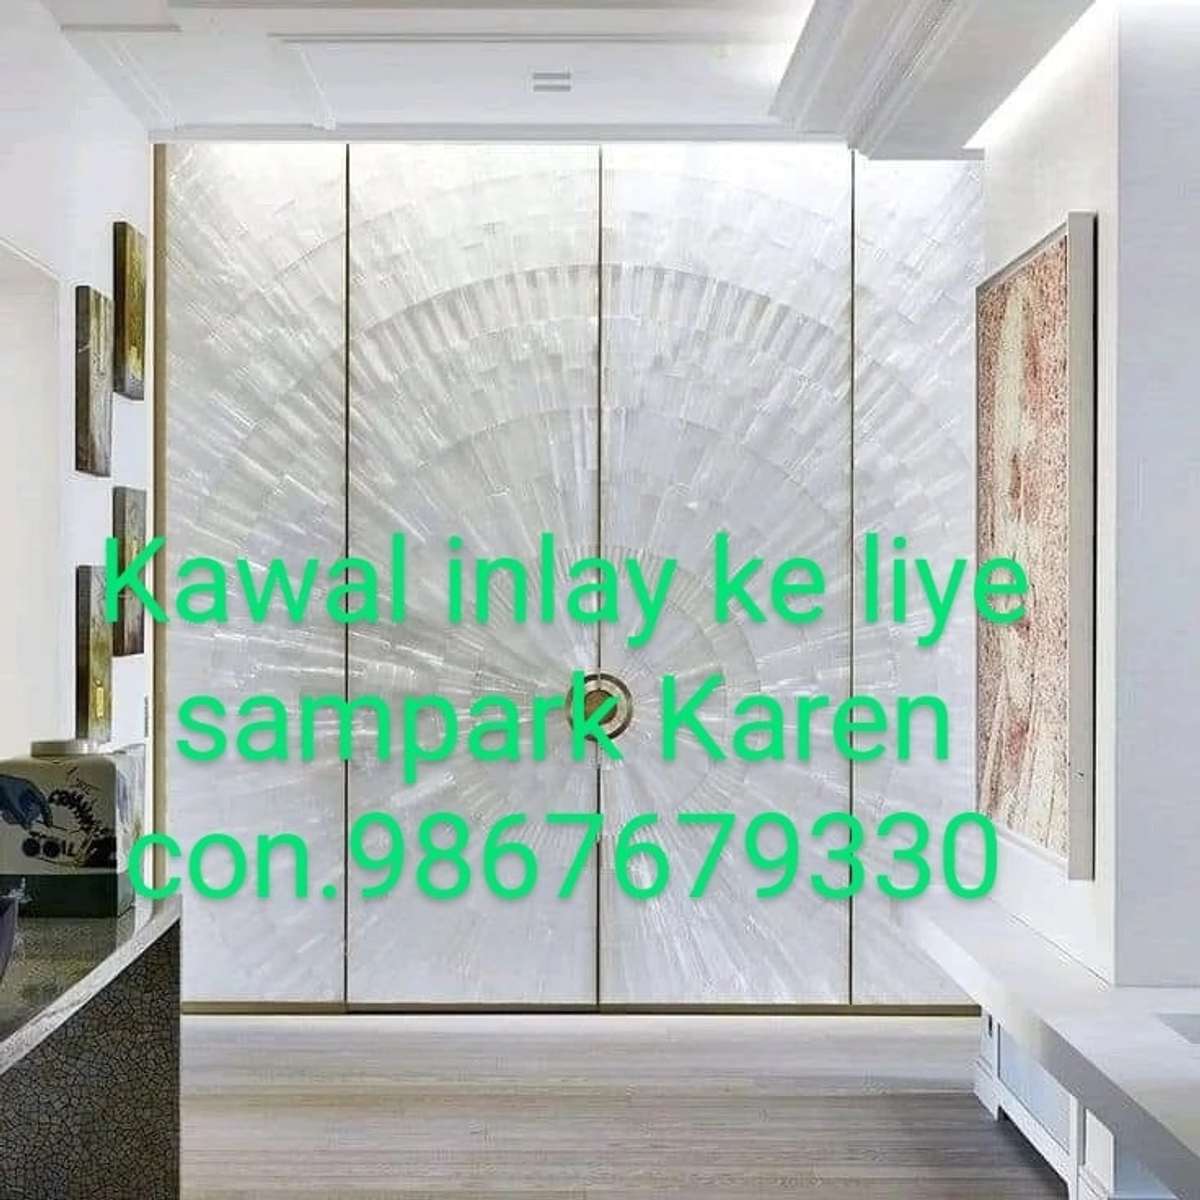 inlay ke liye sampark Karen bhai 9868679330